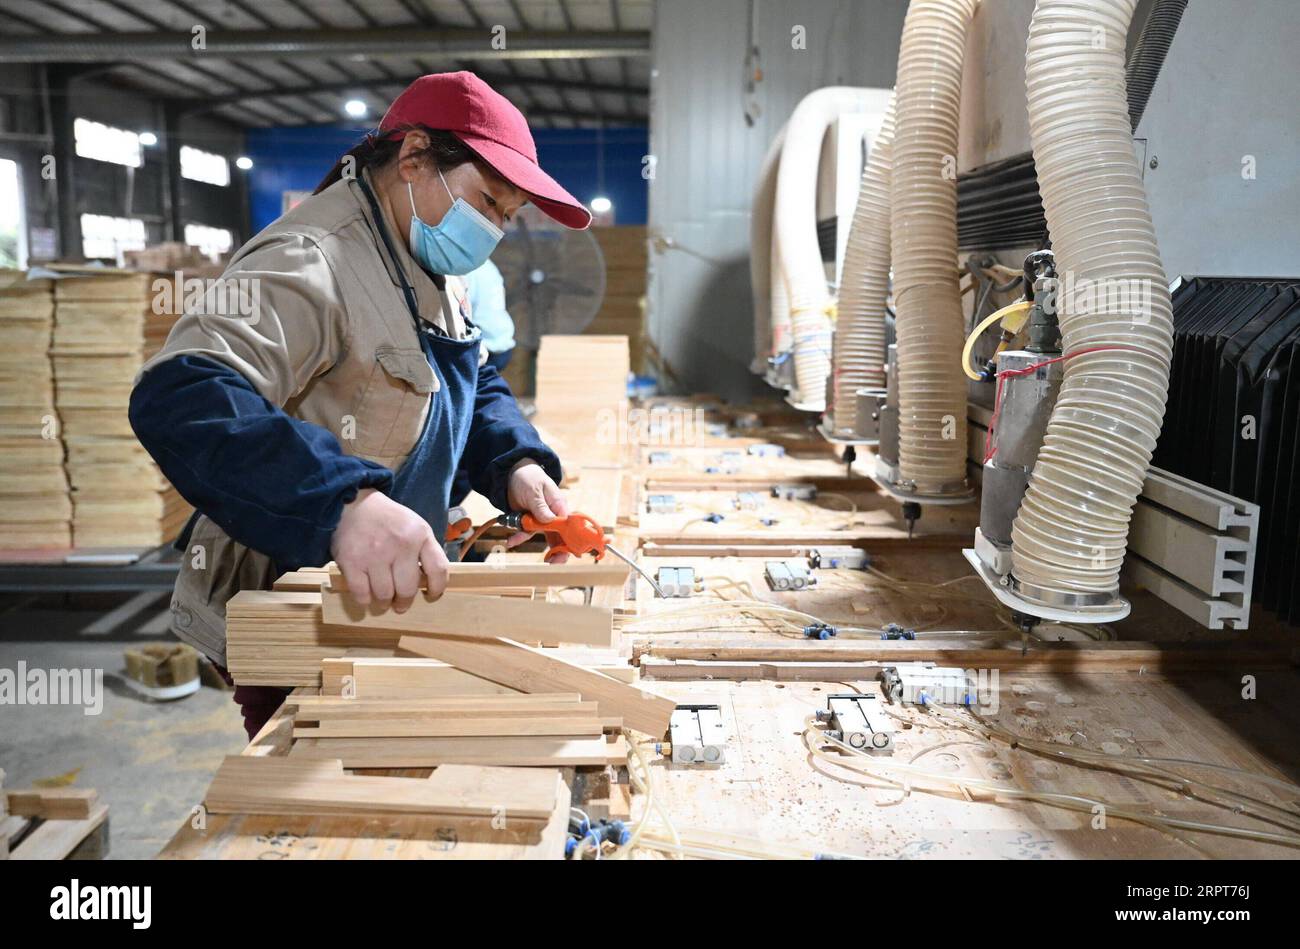 200412 -- ZHENGHE, 12 aprile 2020 -- Un operaio produce prodotti di bambù in una fabbrica nella contea di Zhenghe, nella provincia del Fujian della Cina sudorientale, l'11 aprile 2020. Conosciuta come città artigianale di bambù in Cina, la contea di Zhenghe ha attivamente promosso lo sviluppo dell'industria del bambù con i suoi 460.000 mu circa 30.667 ettari di foresta di bambù. Oggi, ci sono circa 220 imprese con più di 50.000 persone che lavorano nelle industrie del bambù. Nel 2019, il valore totale della produzione dell'industria del bambù nella contea ha raggiunto i 4,379 miliardi di yuan circa 0,62 miliardi di dollari, con un valore di produzione dei prodotti di esportazione pari a 876 milioni di yu Foto Stock